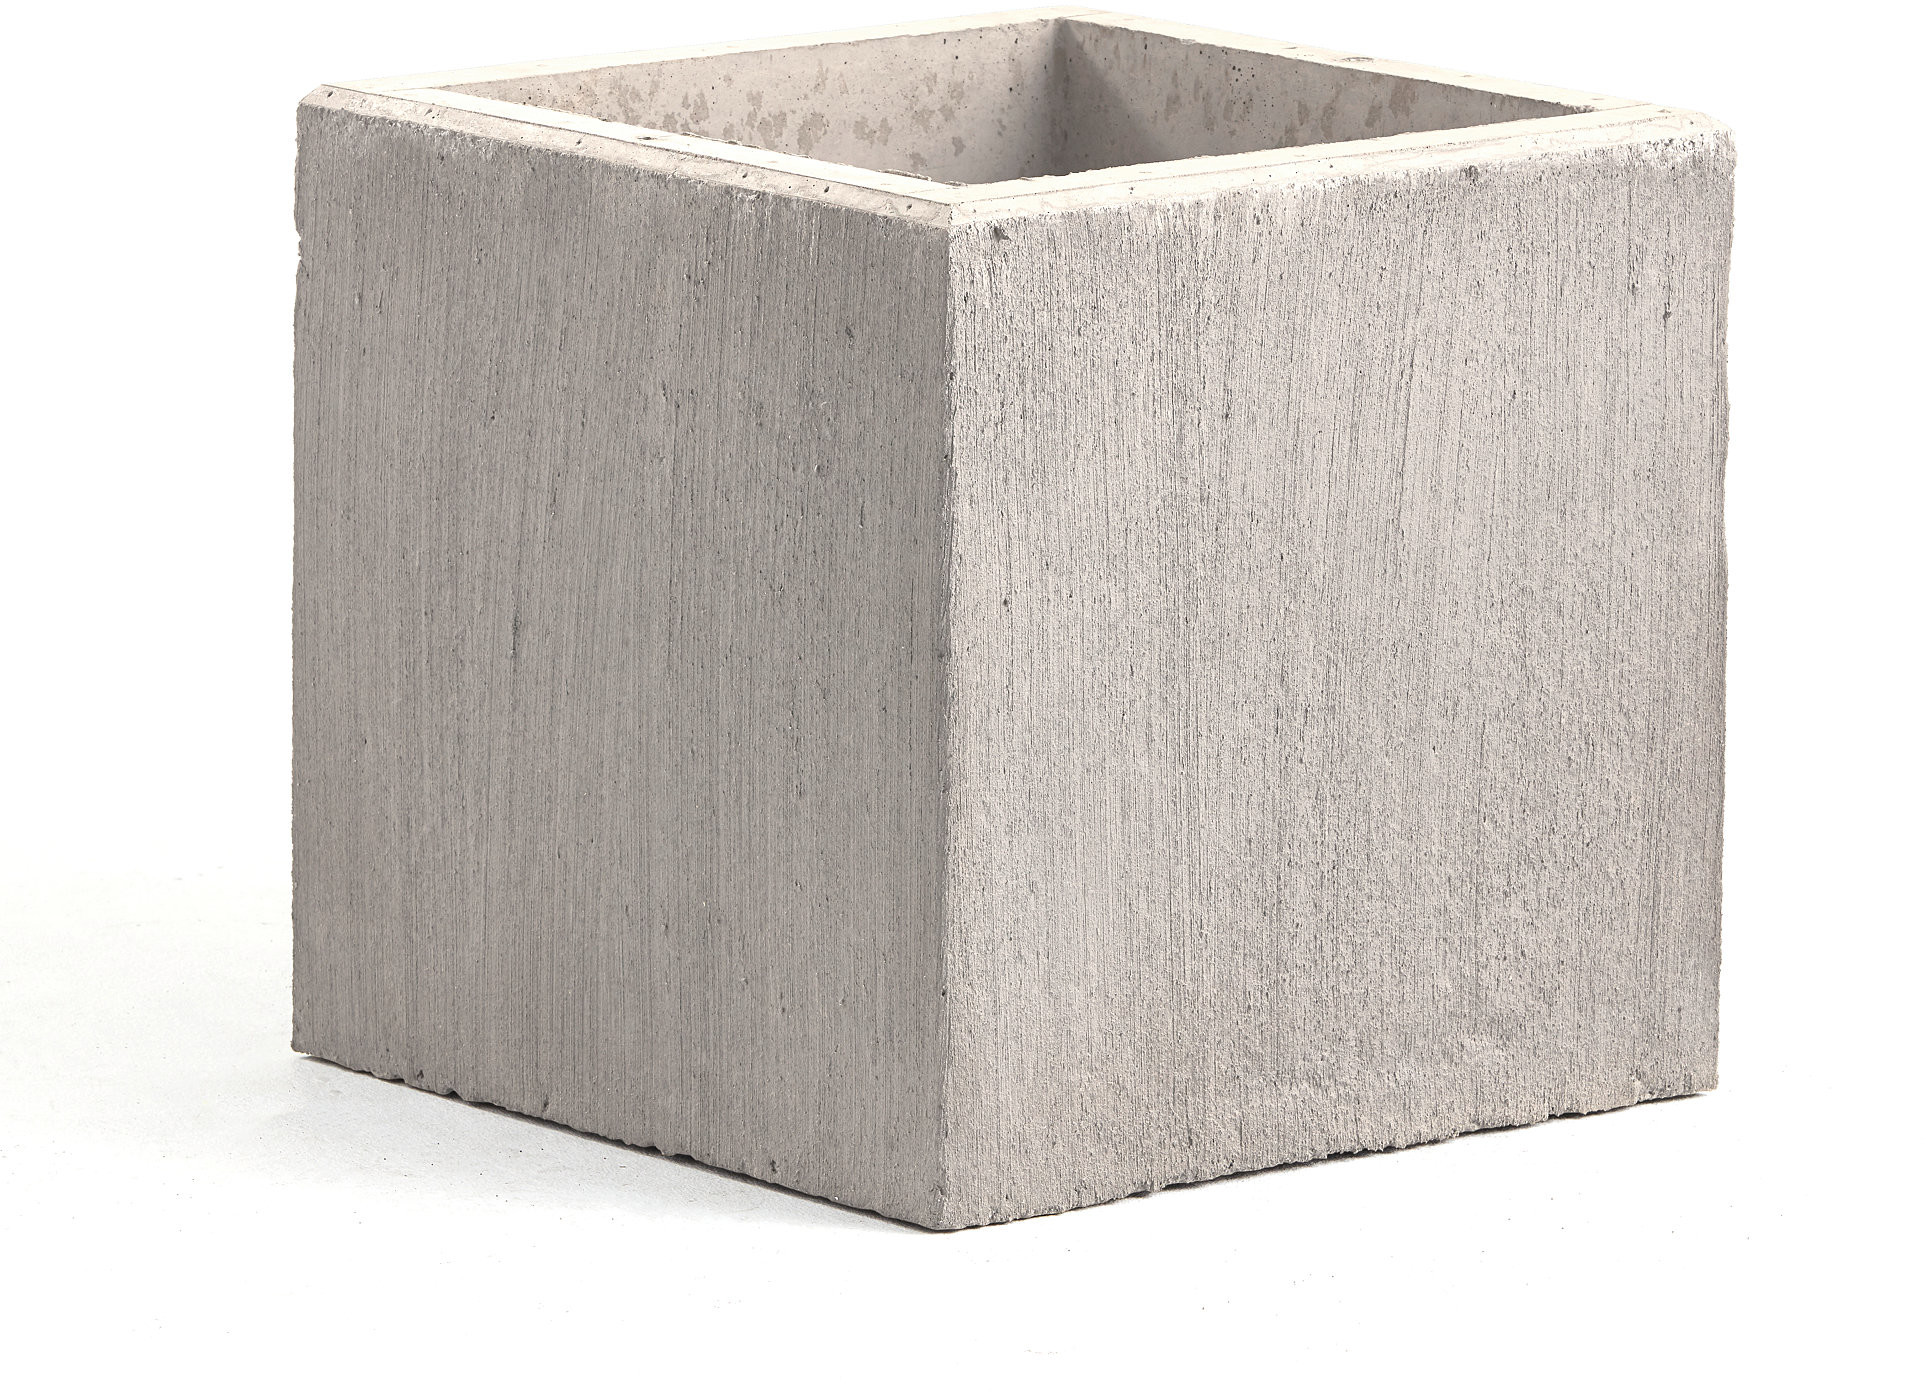 AJ Produkty Donica betonowa, 600x600 mm, szara